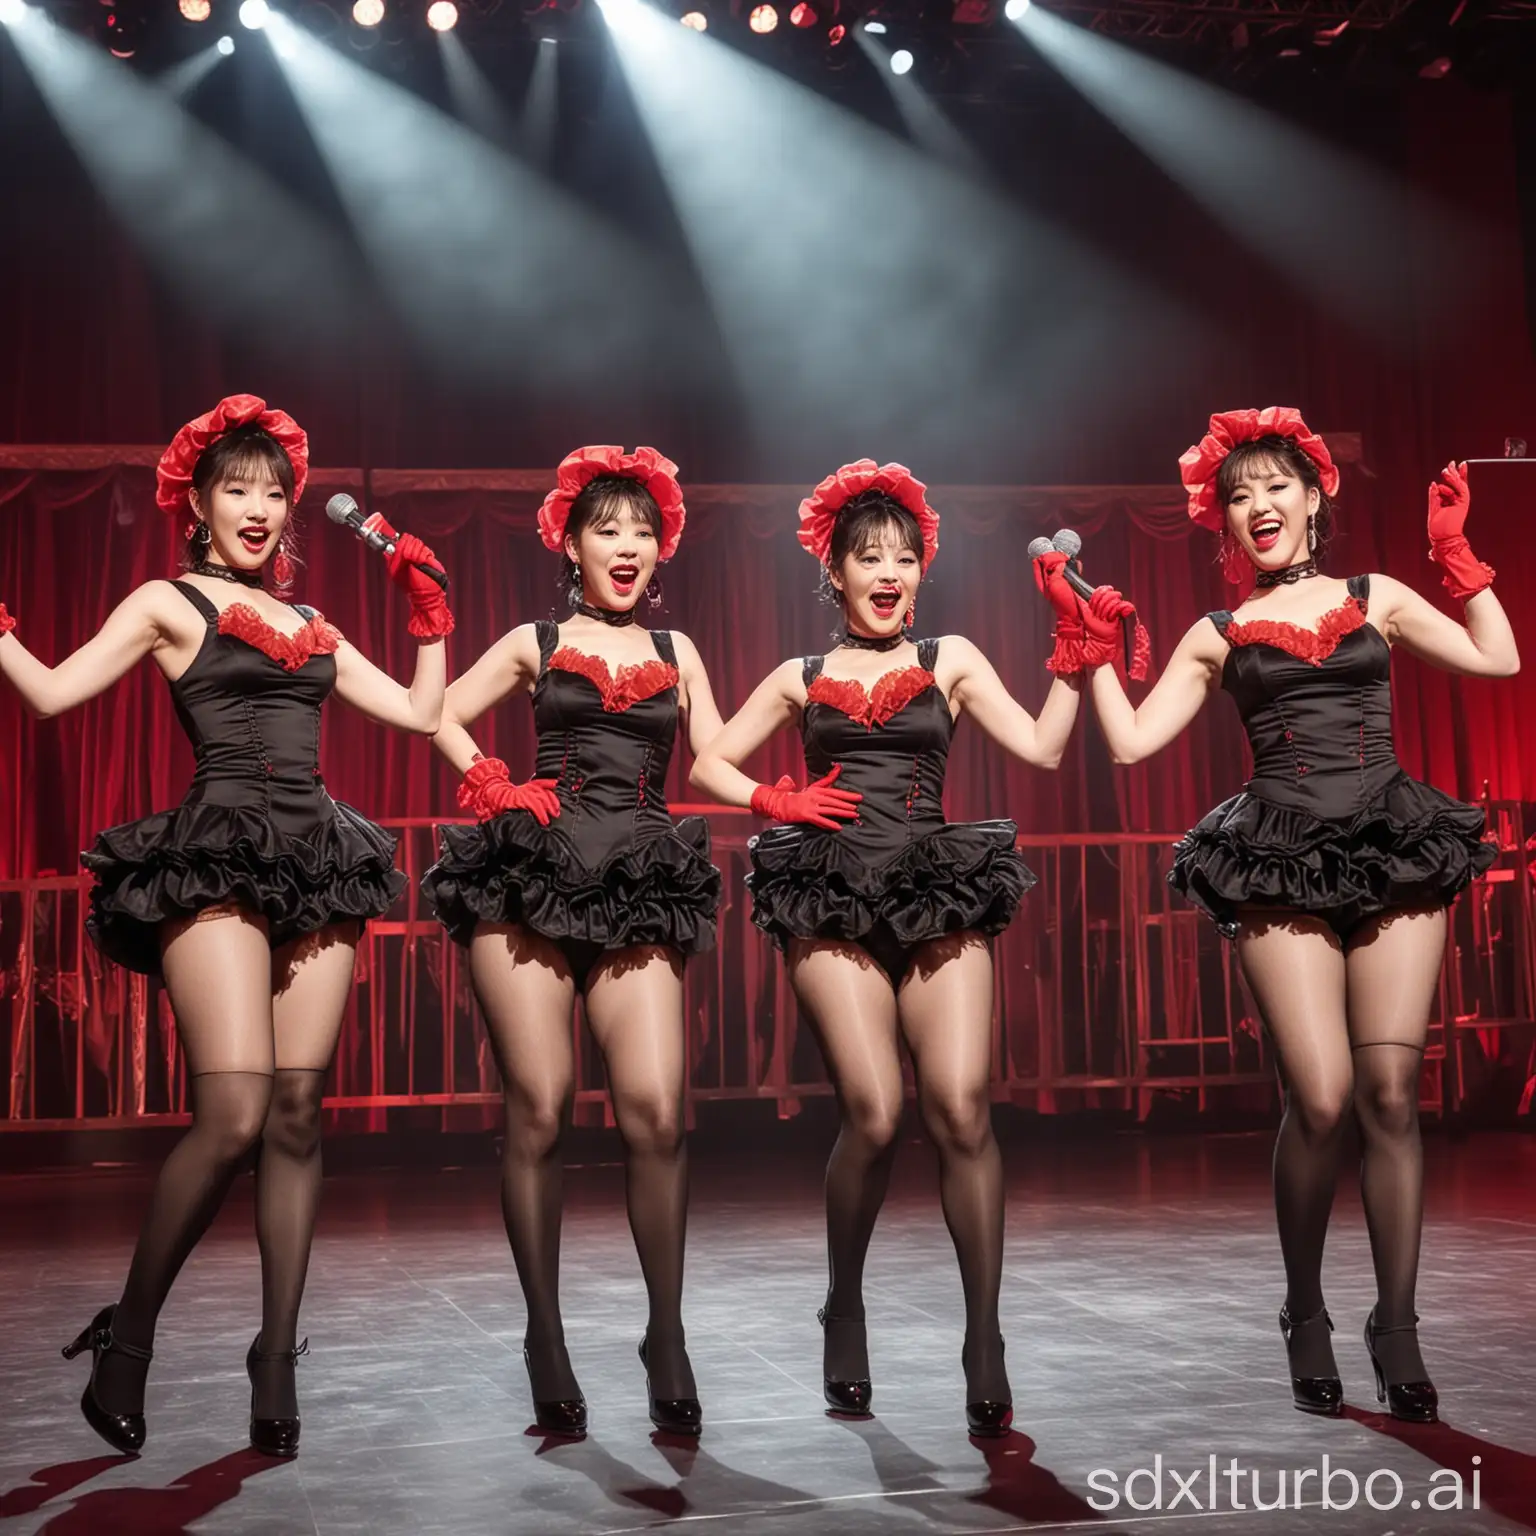 Grupo feminino de k pop vestida de dançarinas de can can com luva vermelha e microfone na mão cantando juntas no palco e pessoas filmando